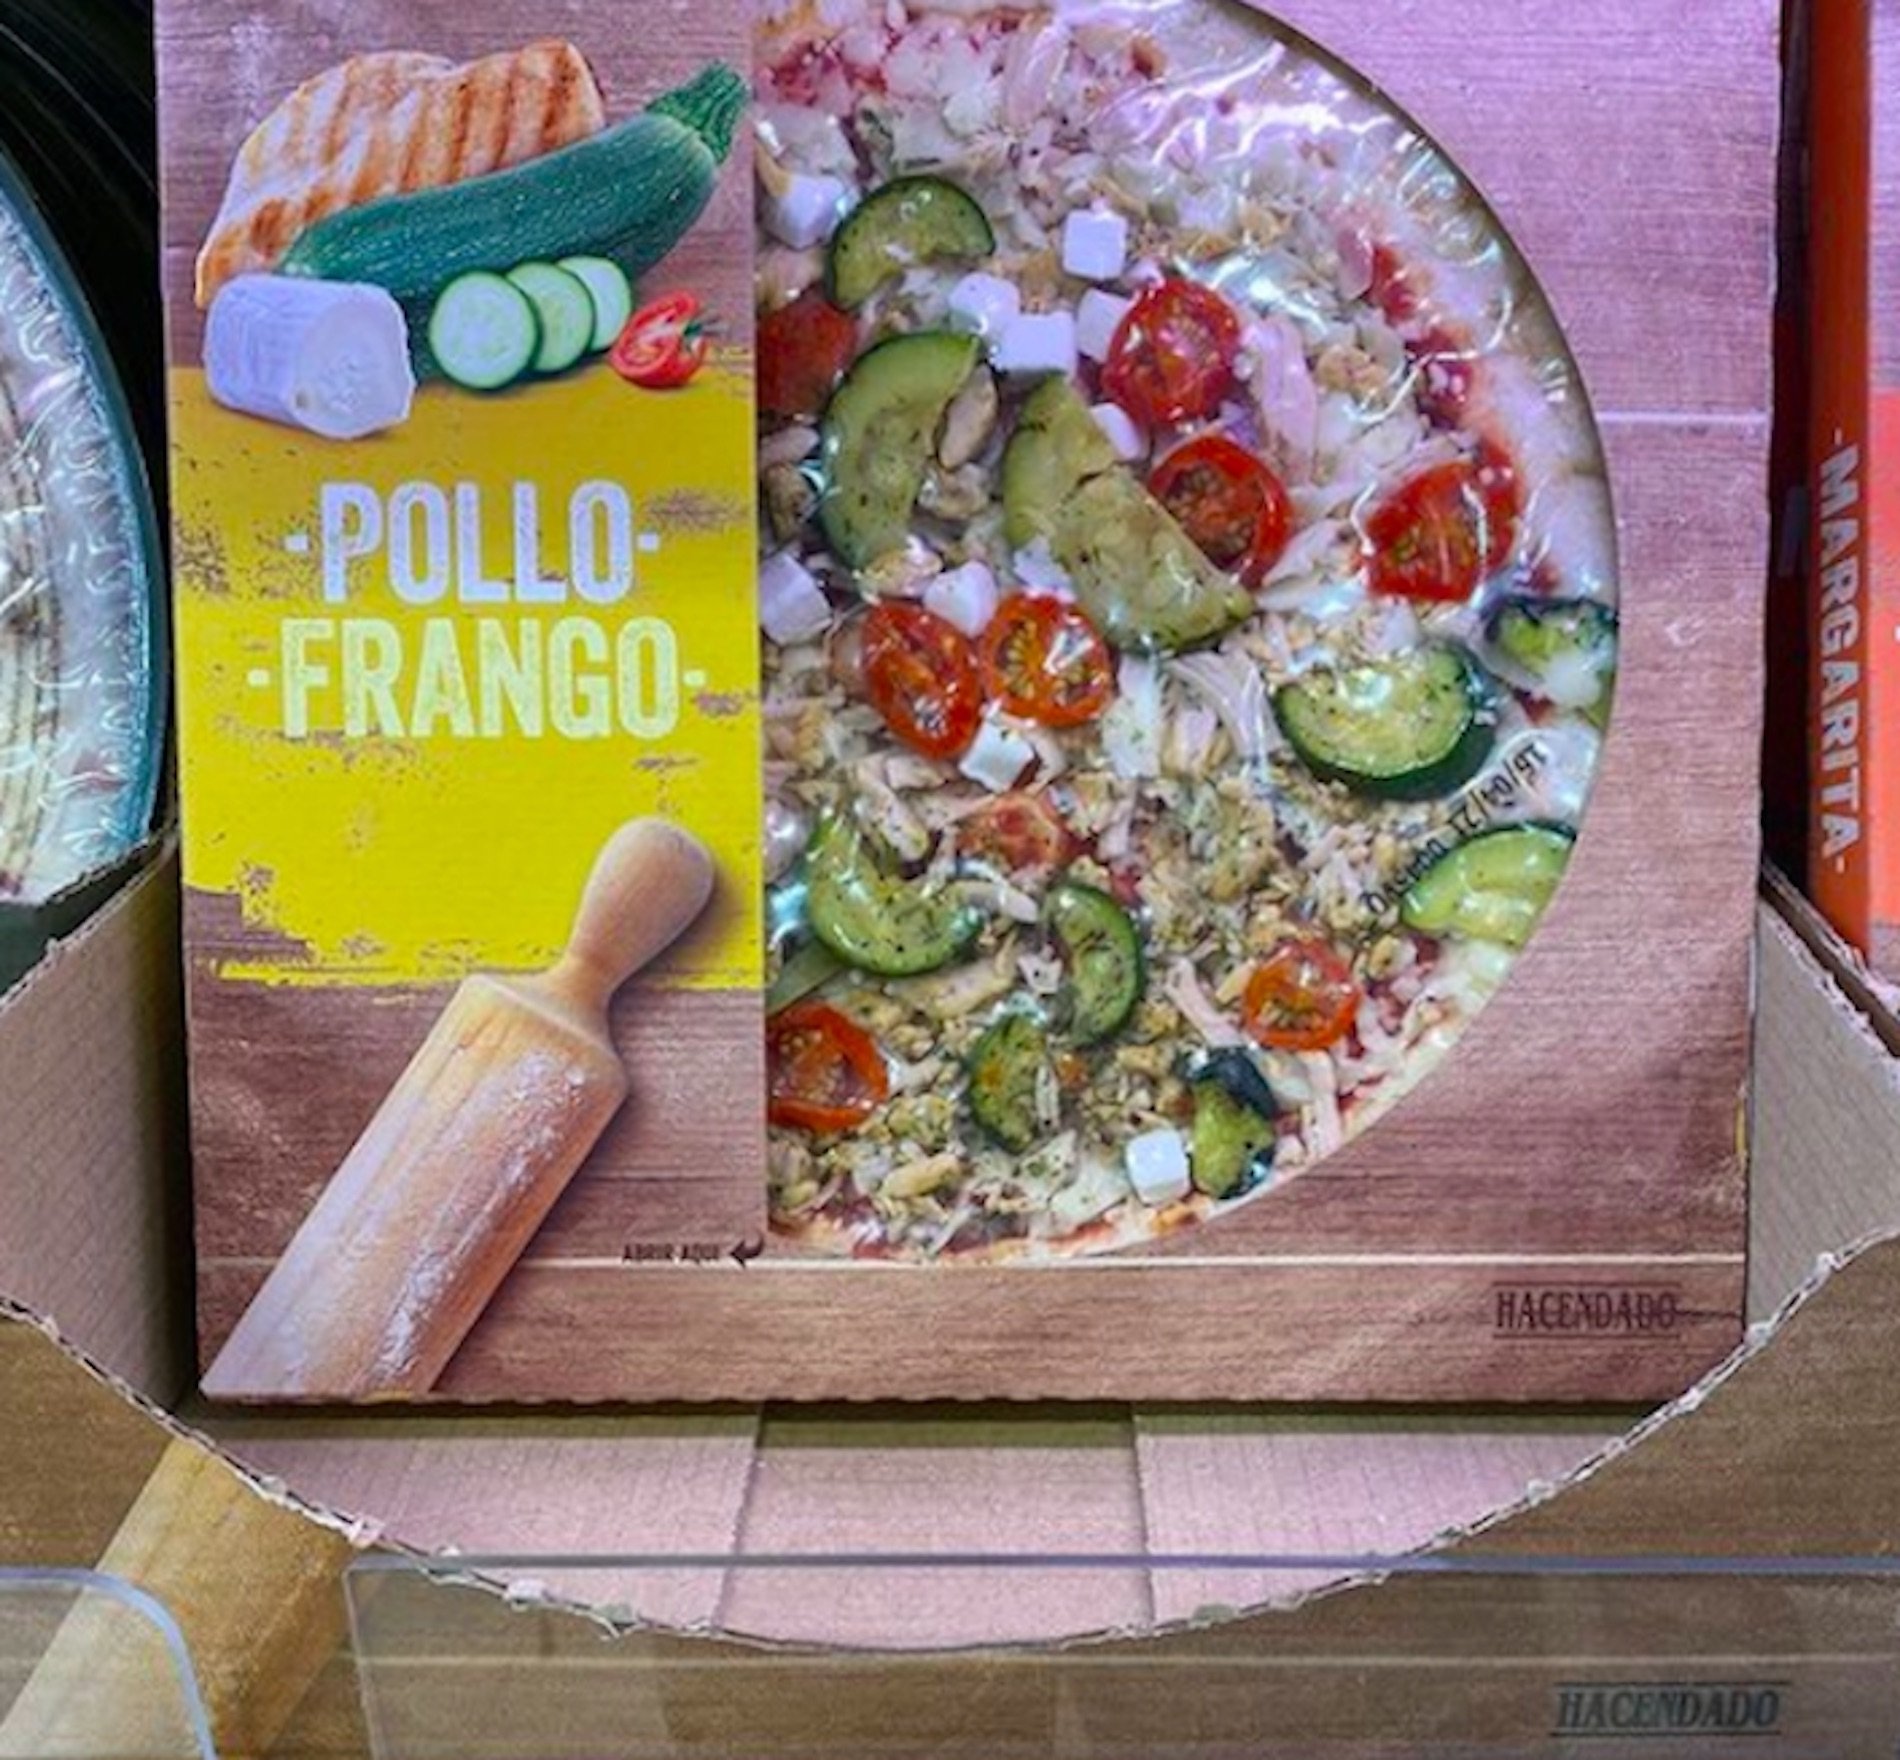 Pizza carcomo frango / Instagram mercadona.novedades